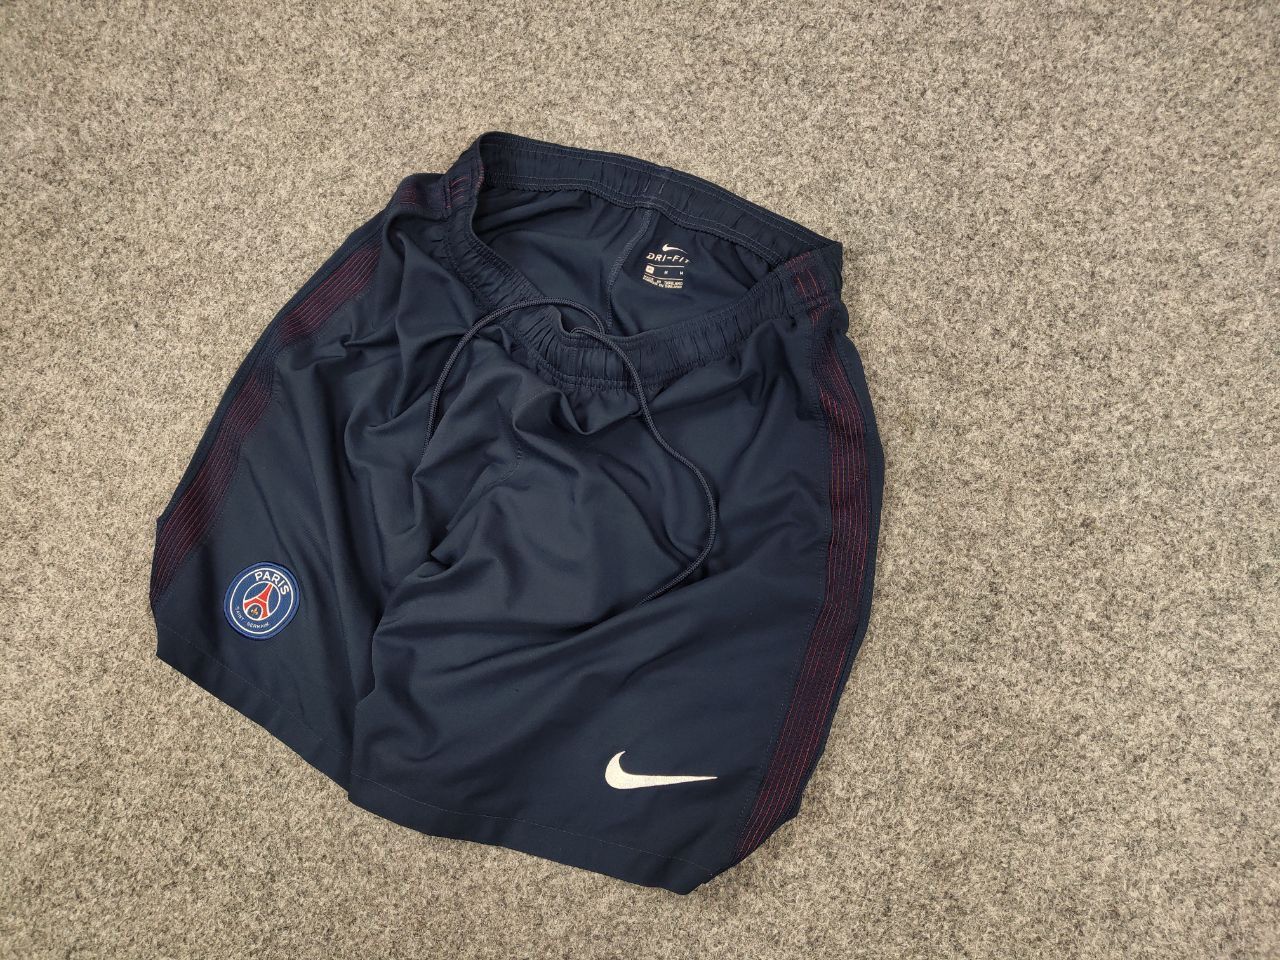 Nike Nike x Paris Saint-Germain PSG Vintage Style Blue Shorts Size US 32 / EU 48 - 3 Thumbnail